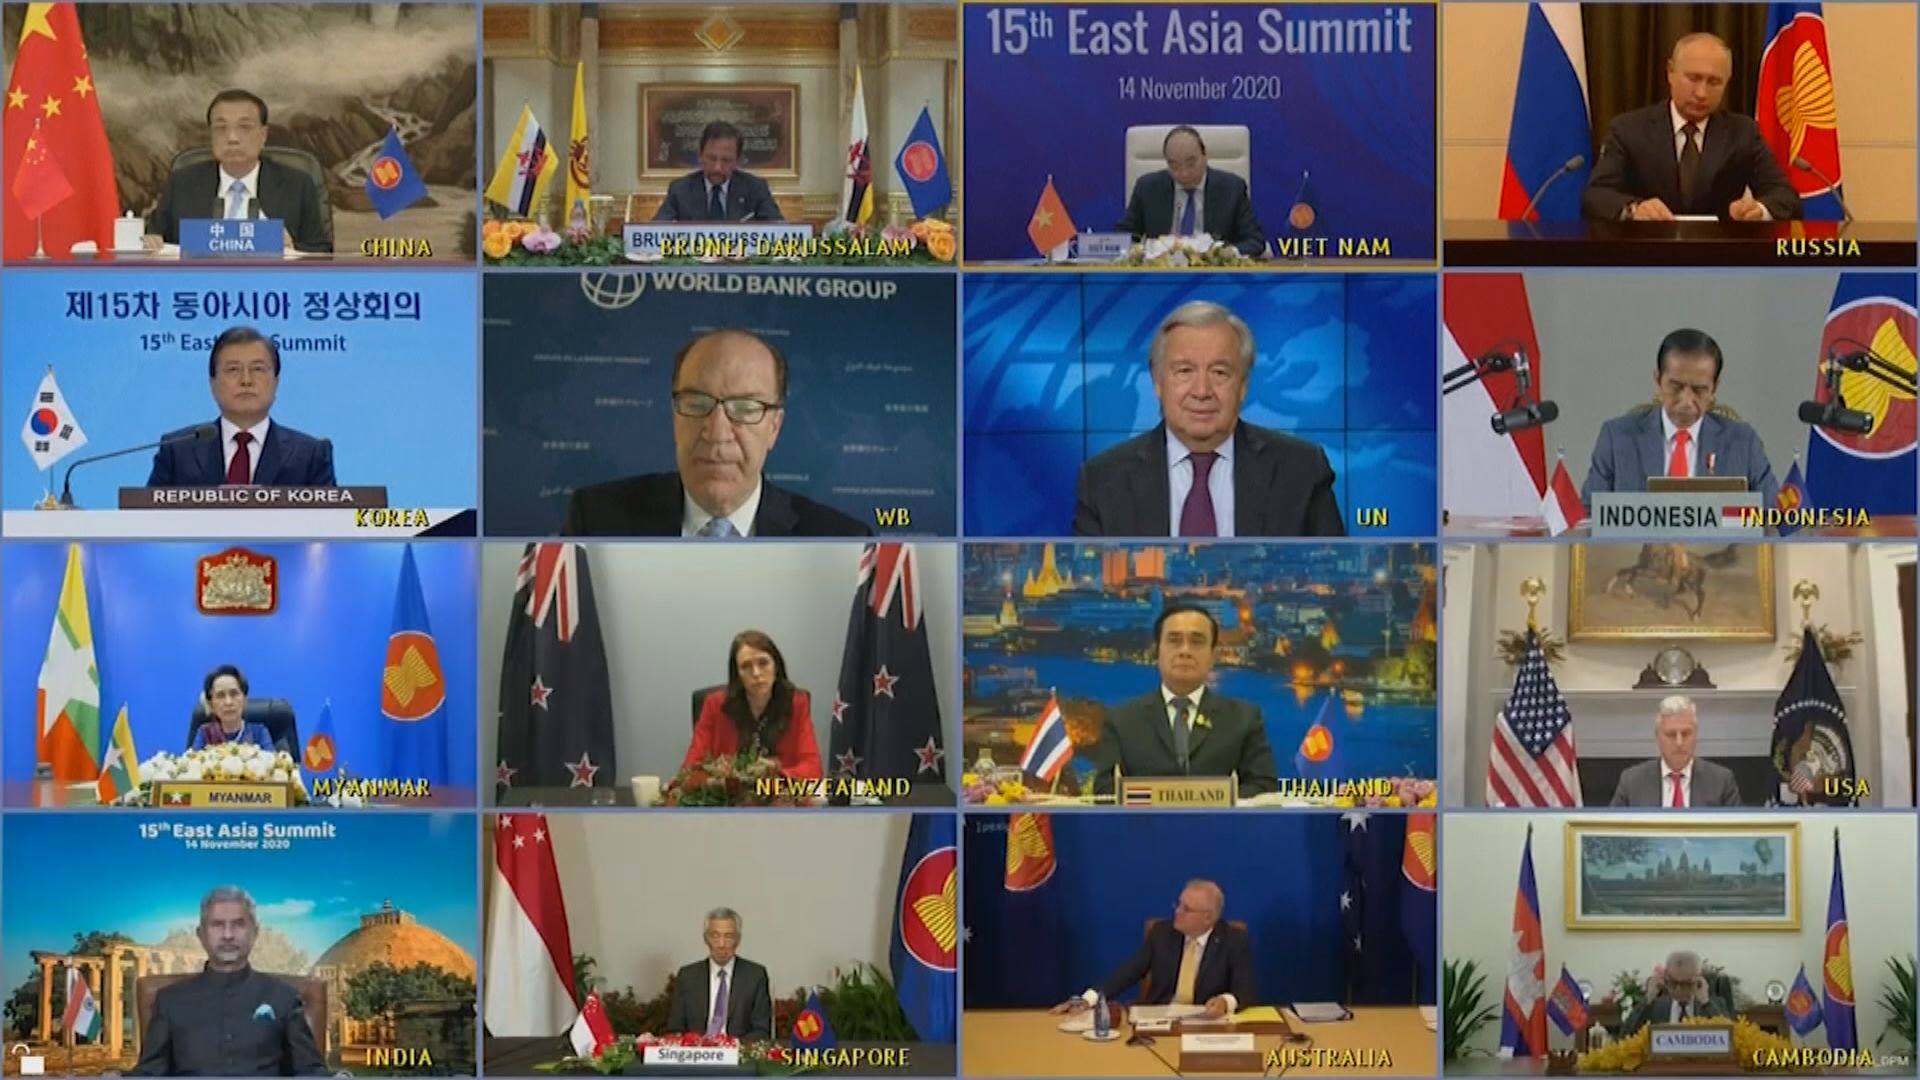 東亞峰會主席聲明對損害南海和平行為表達嚴重關切